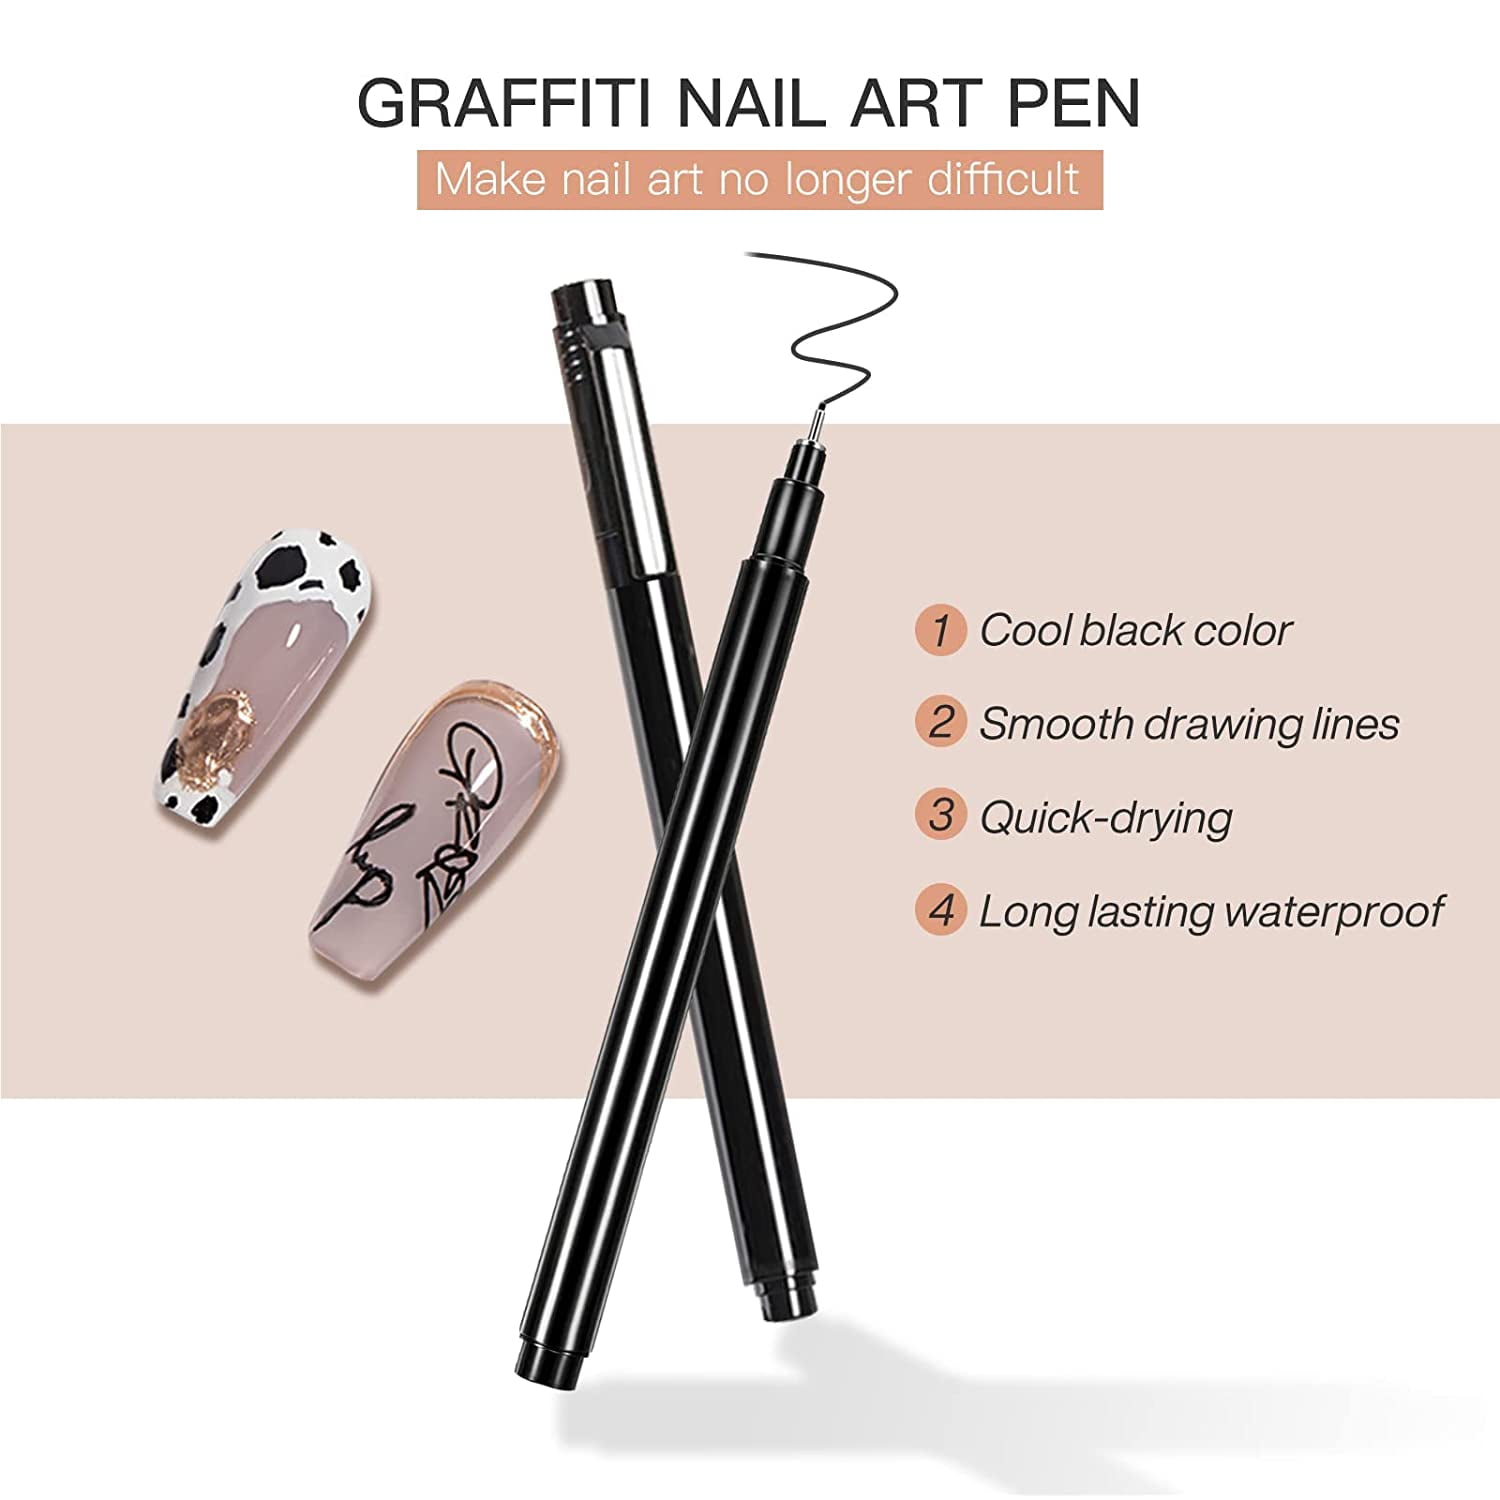 Hearnfox Nail Art Pen,3D Nail Art Graffiti Pen Nail Art Drawing